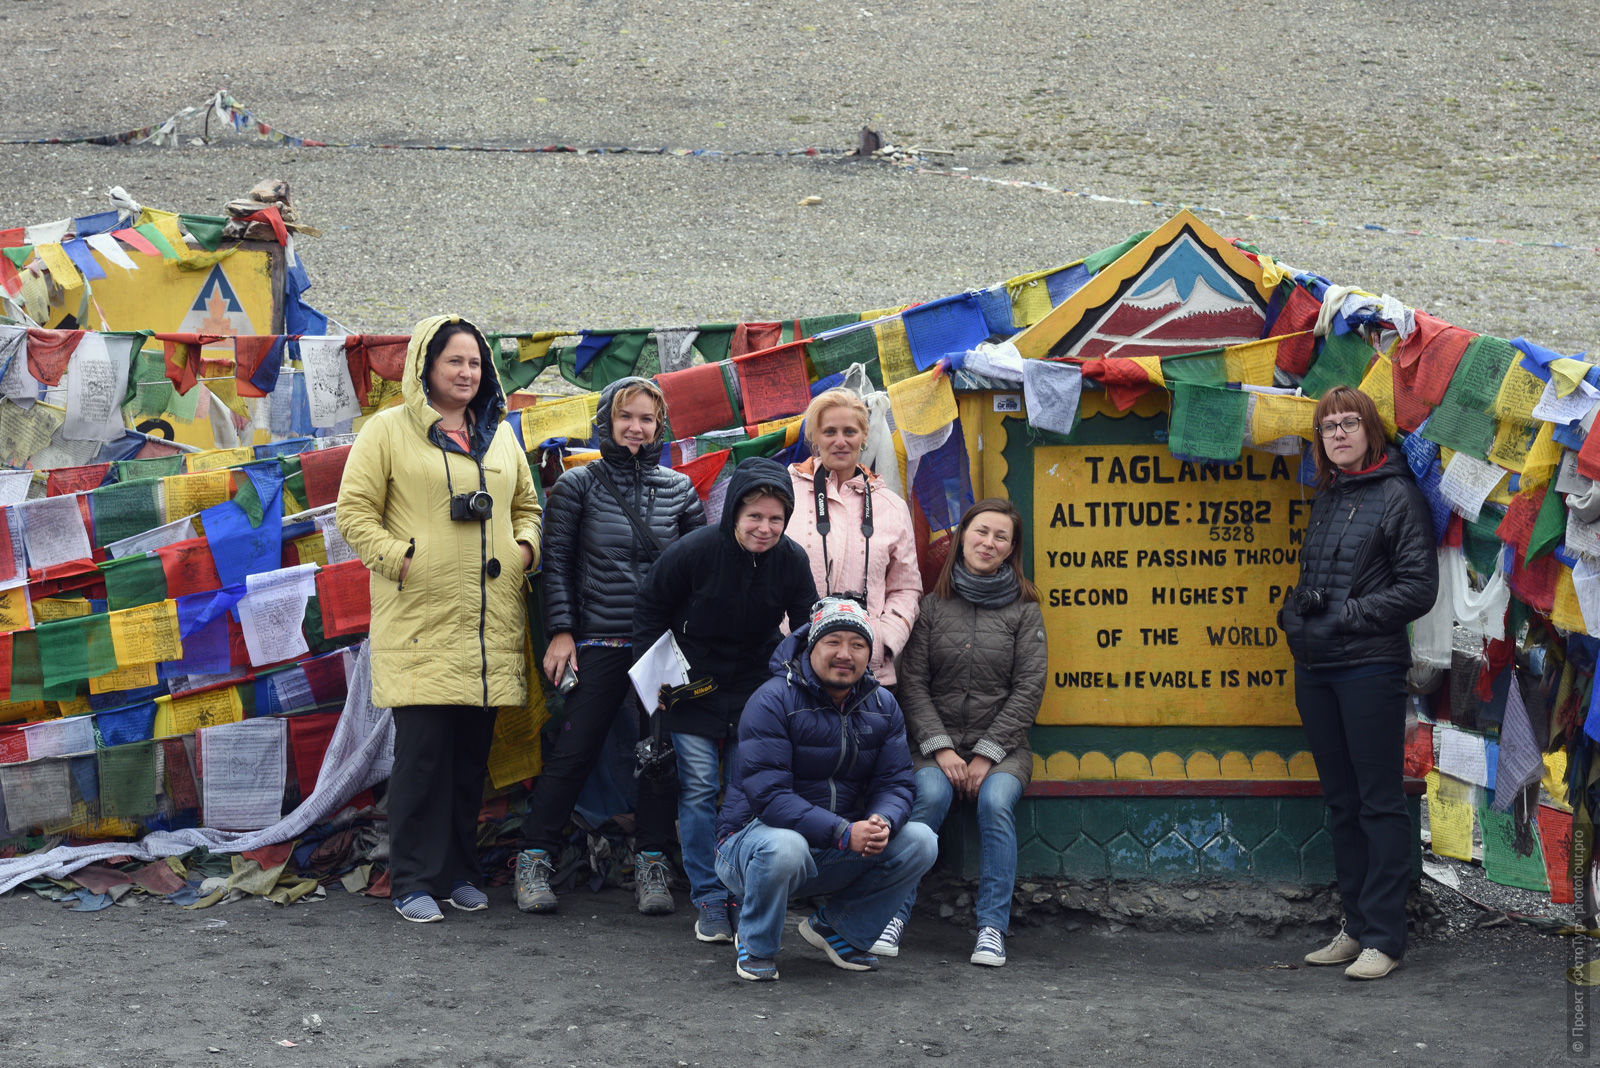 На перевале Танглангла, тур Сны о Тибете, июль 2017 года.